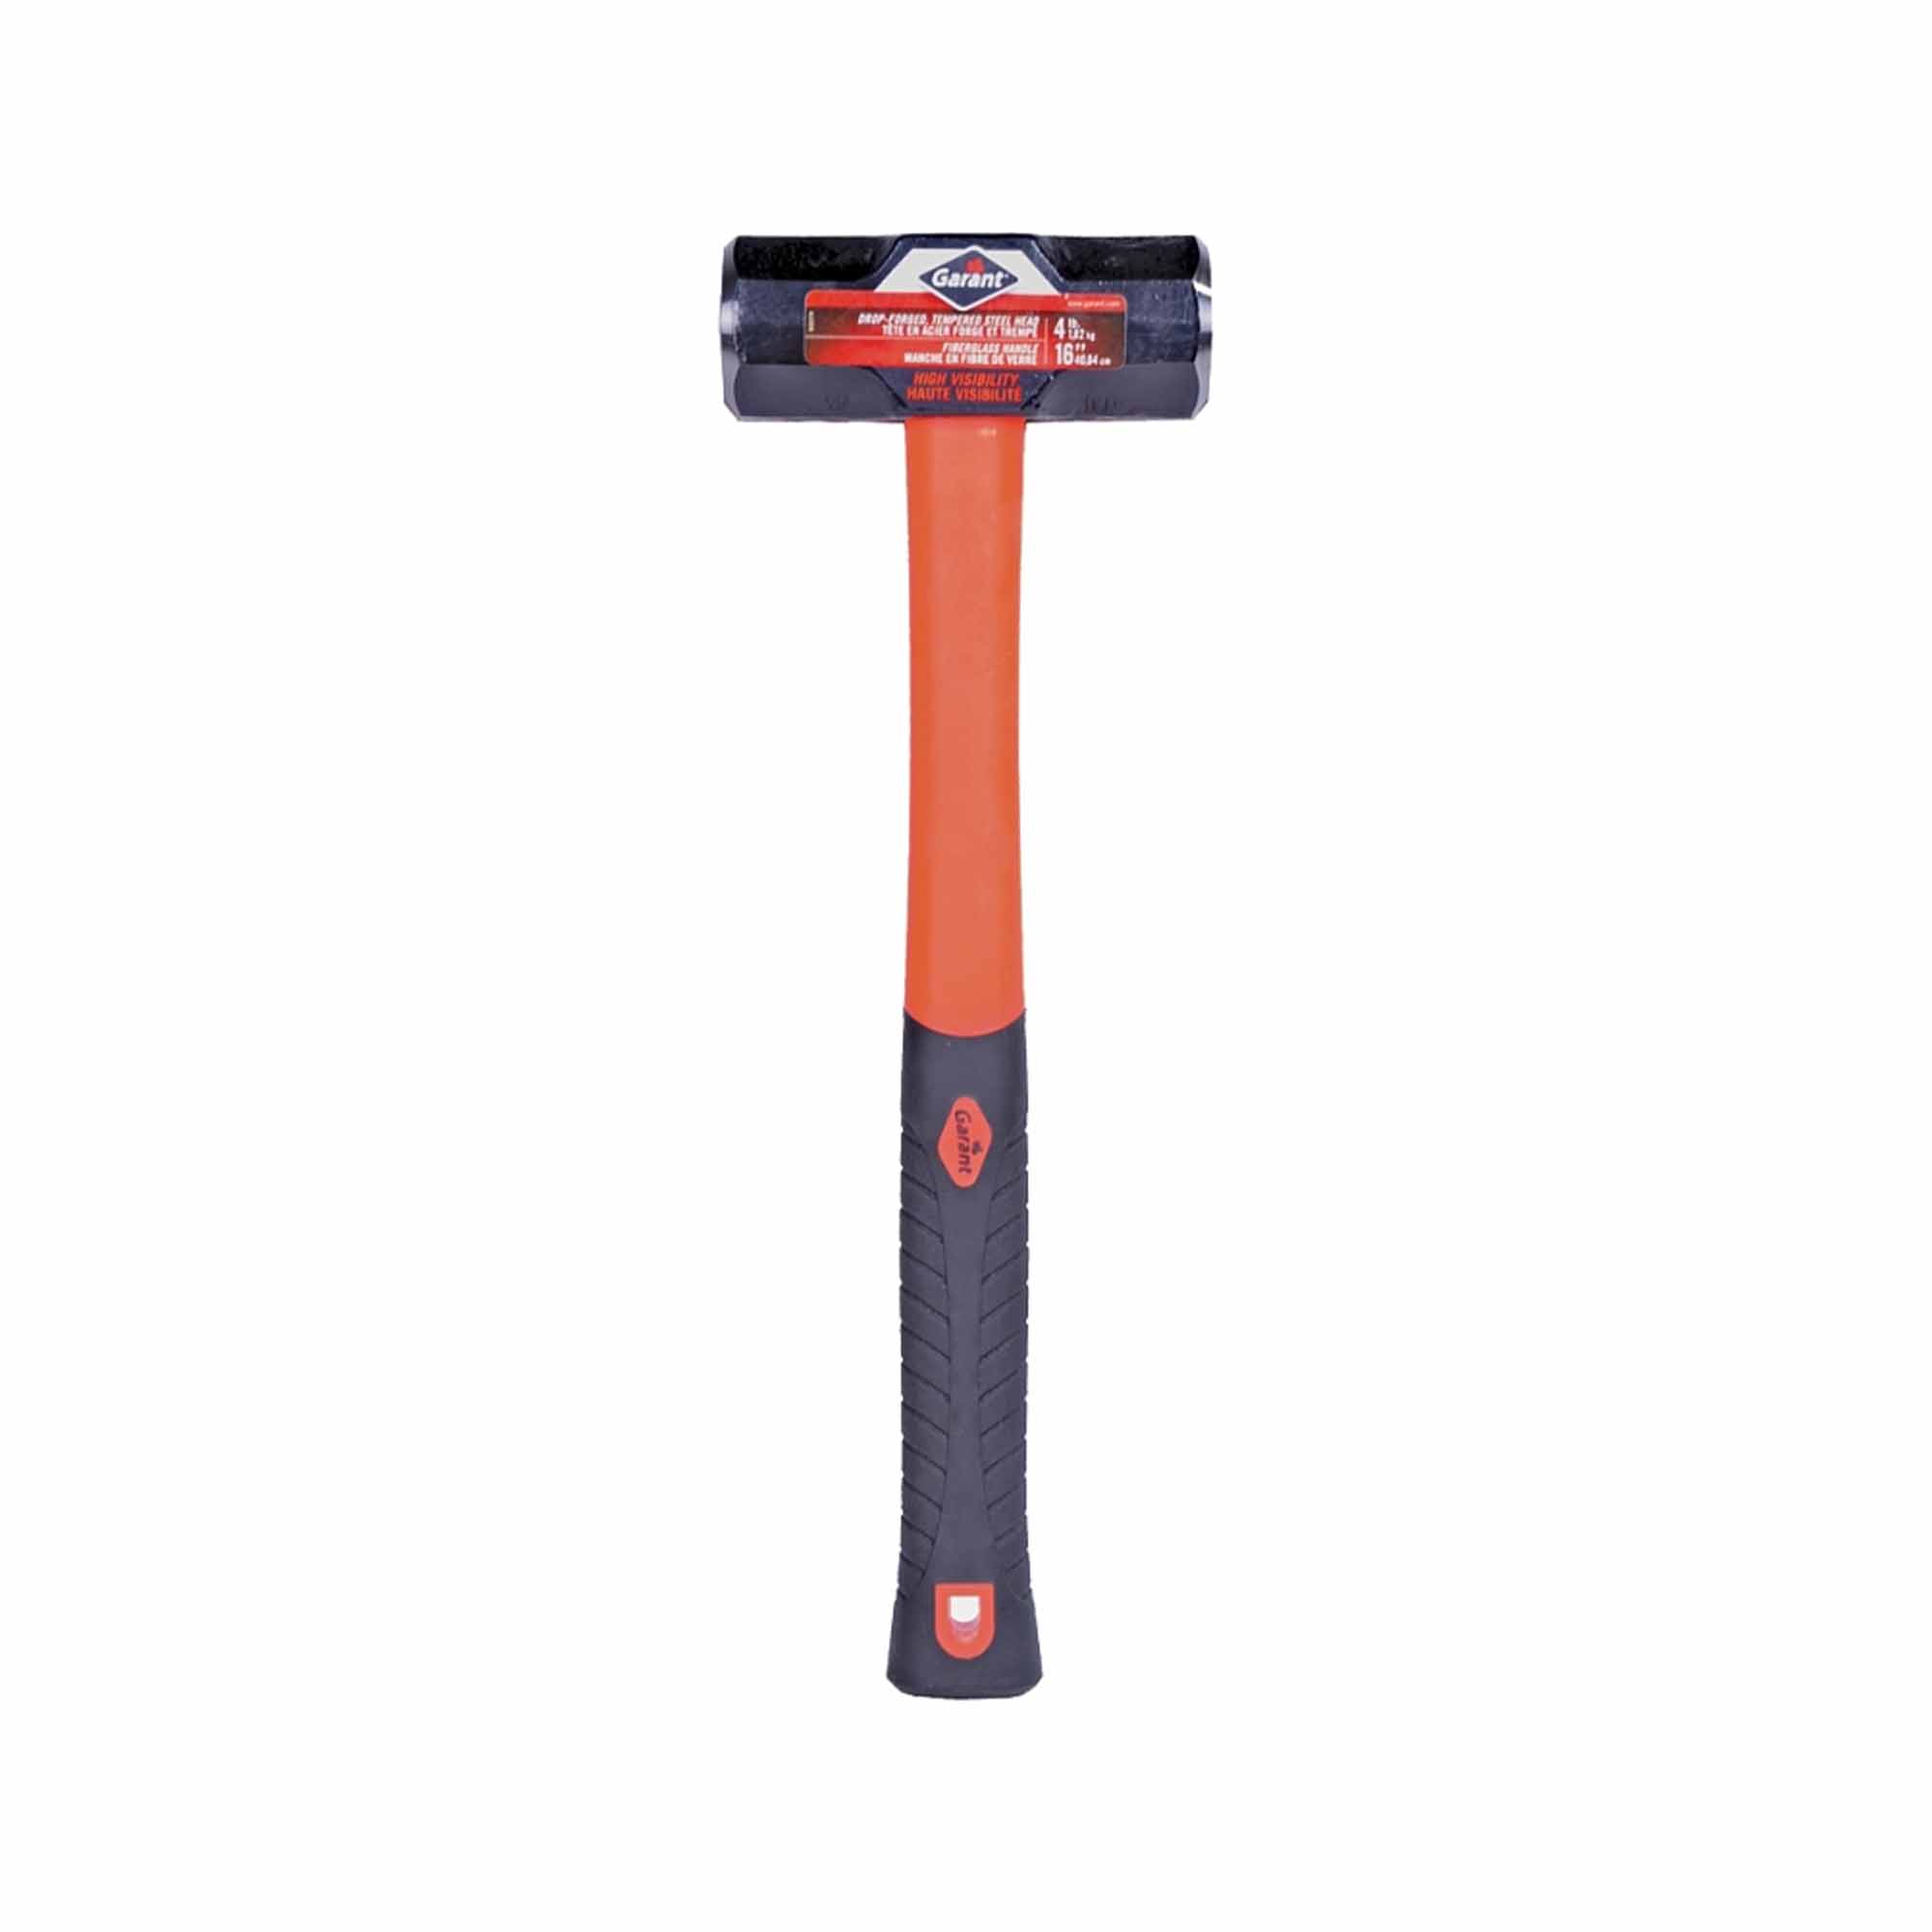 Garant - Sledgehammer, 4 lb